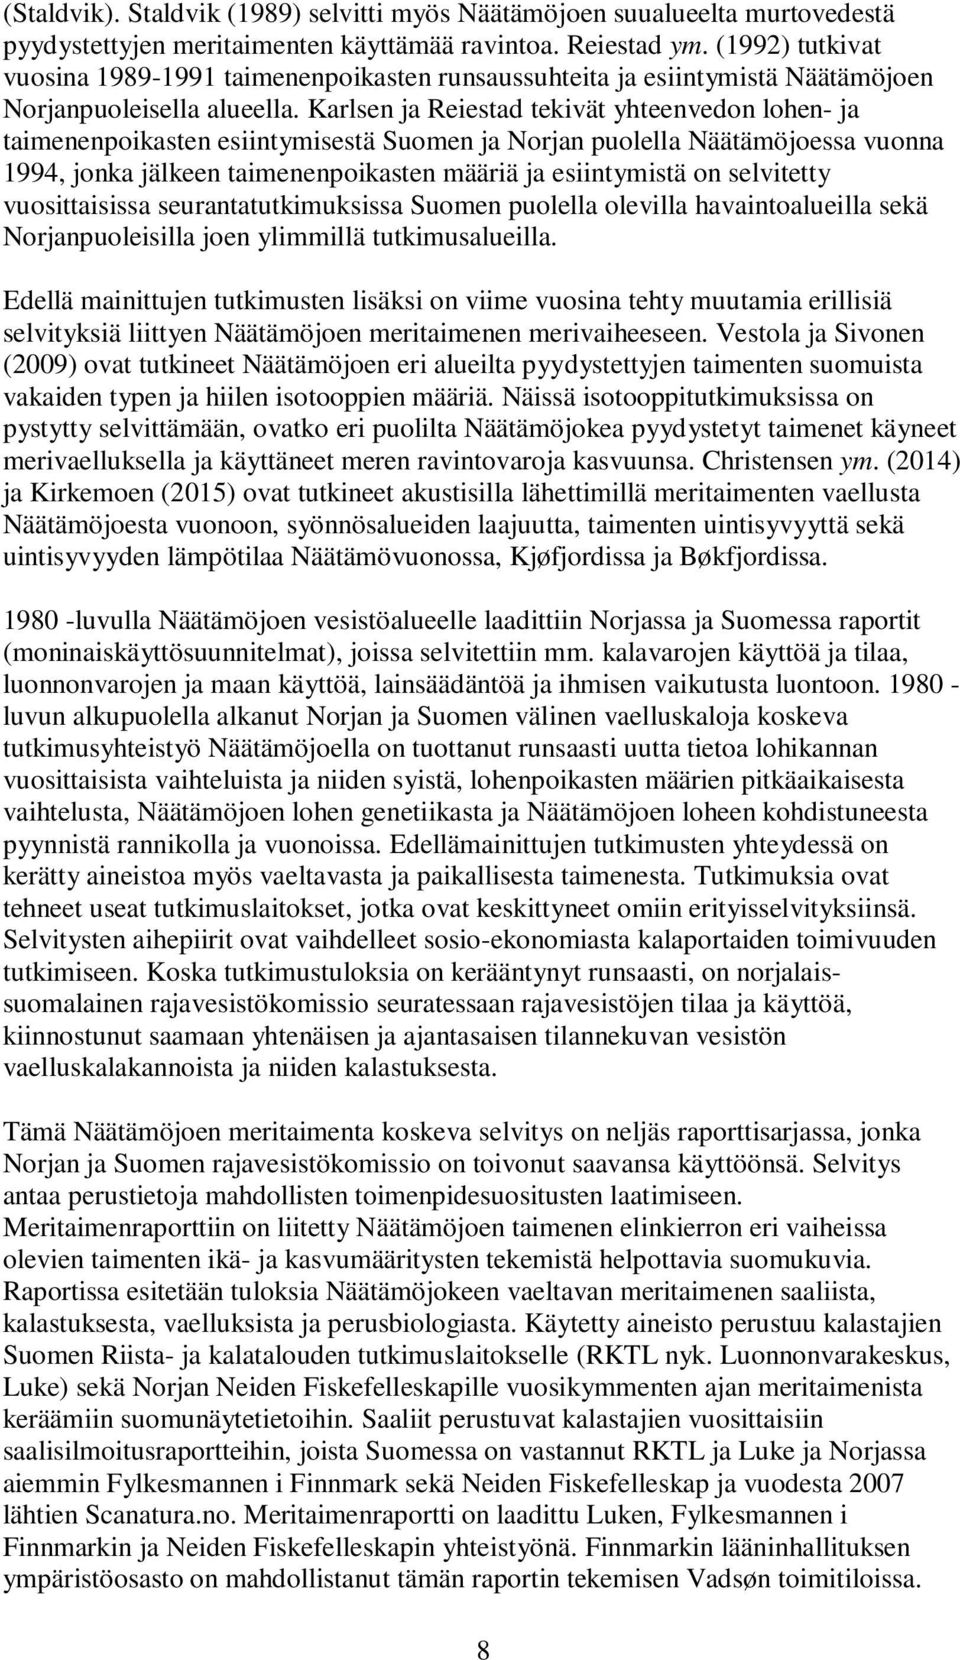 Karlsen ja Reiestad tekivät yhteenvedon lohen- ja taimenenpoikasten esiintymisestä Suomen ja Norjan puolella Näätämöjoessa vuonna 1994, jonka jälkeen taimenenpoikasten määriä ja esiintymistä on